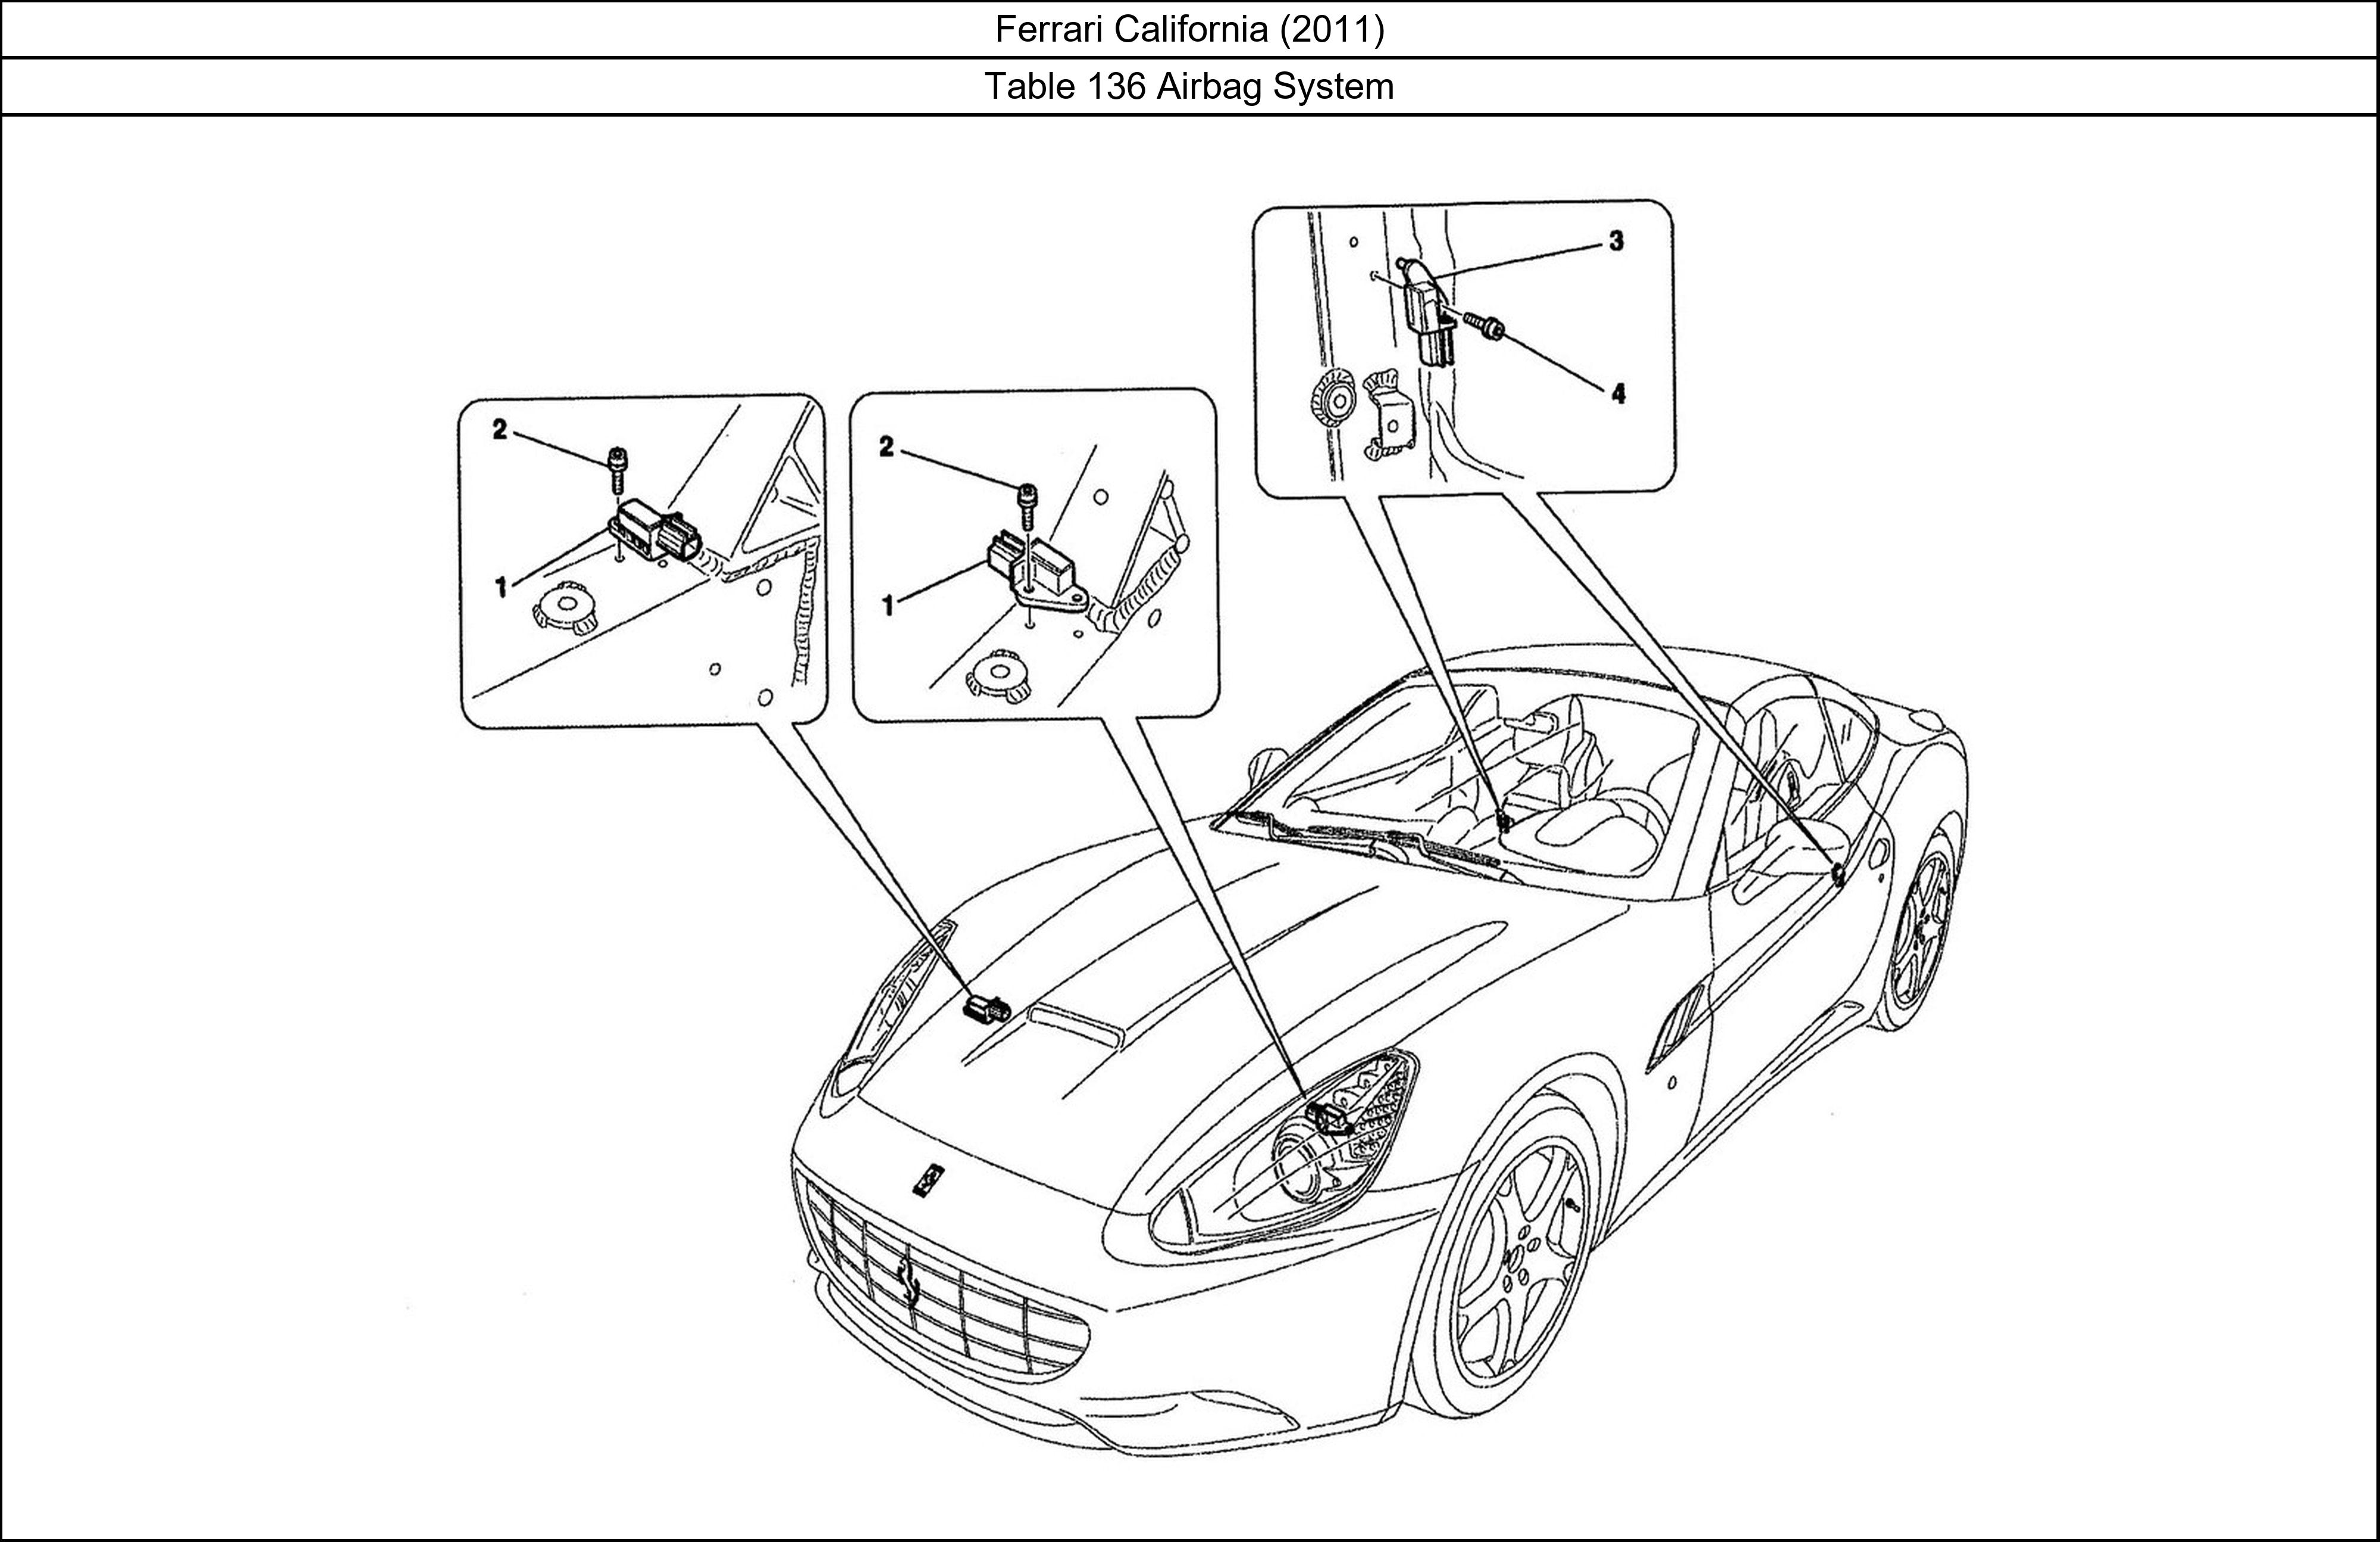 Ferrari Parts Ferrari California (2011) Table 136 Airbag System